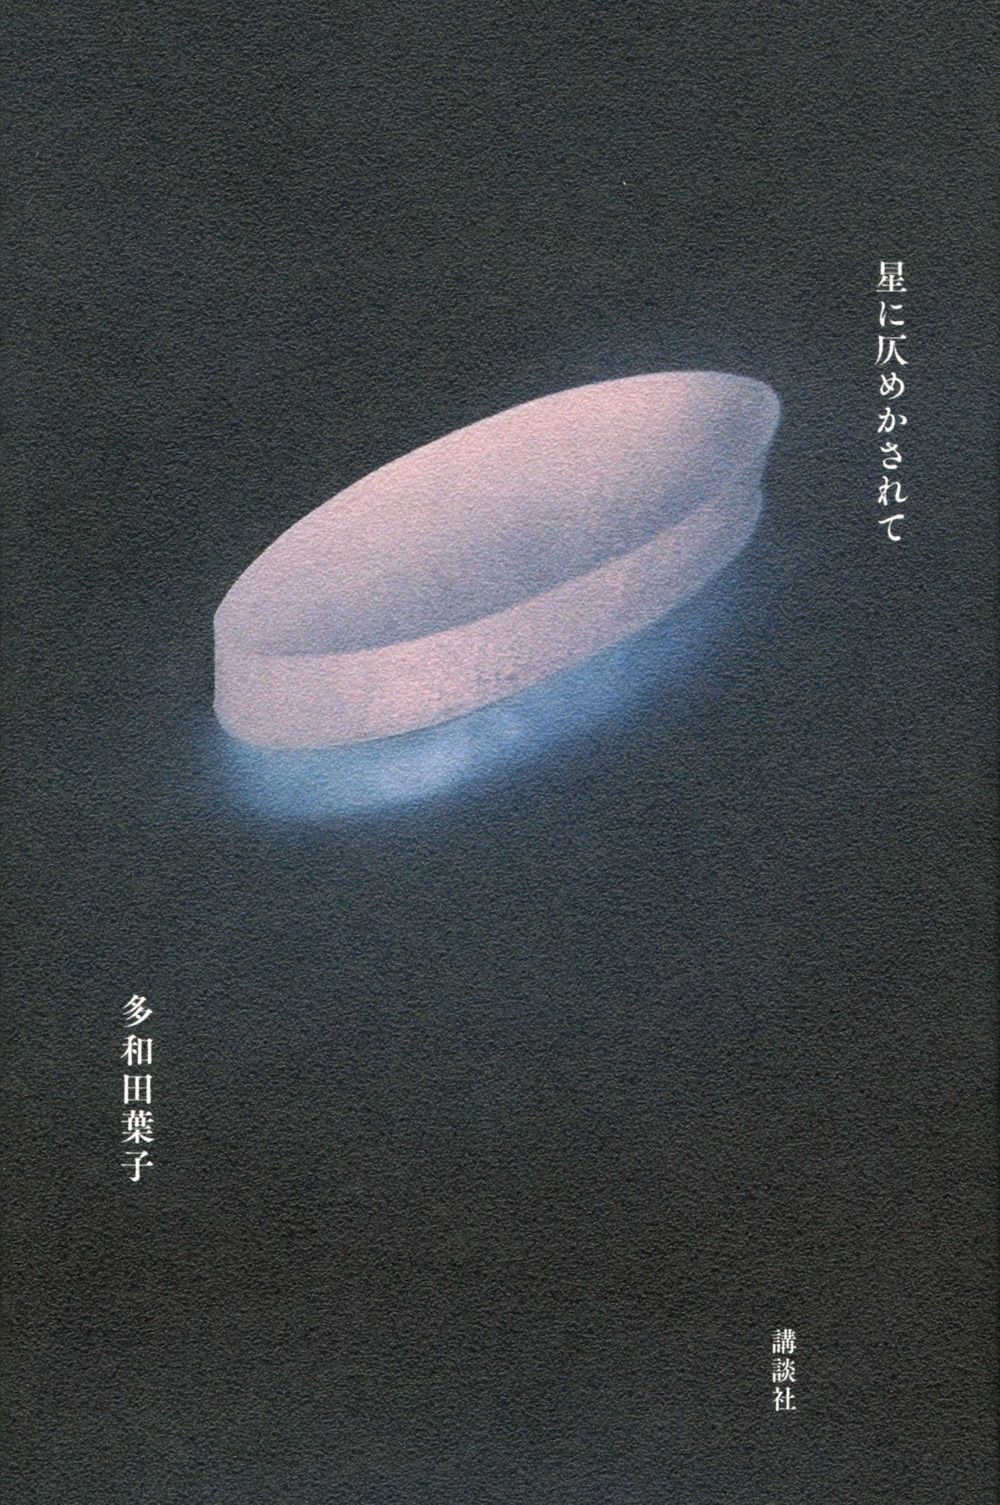 رواية عام 2020، هوشي ني هونوميكاساريتي (أو مكتوب على النجوم).